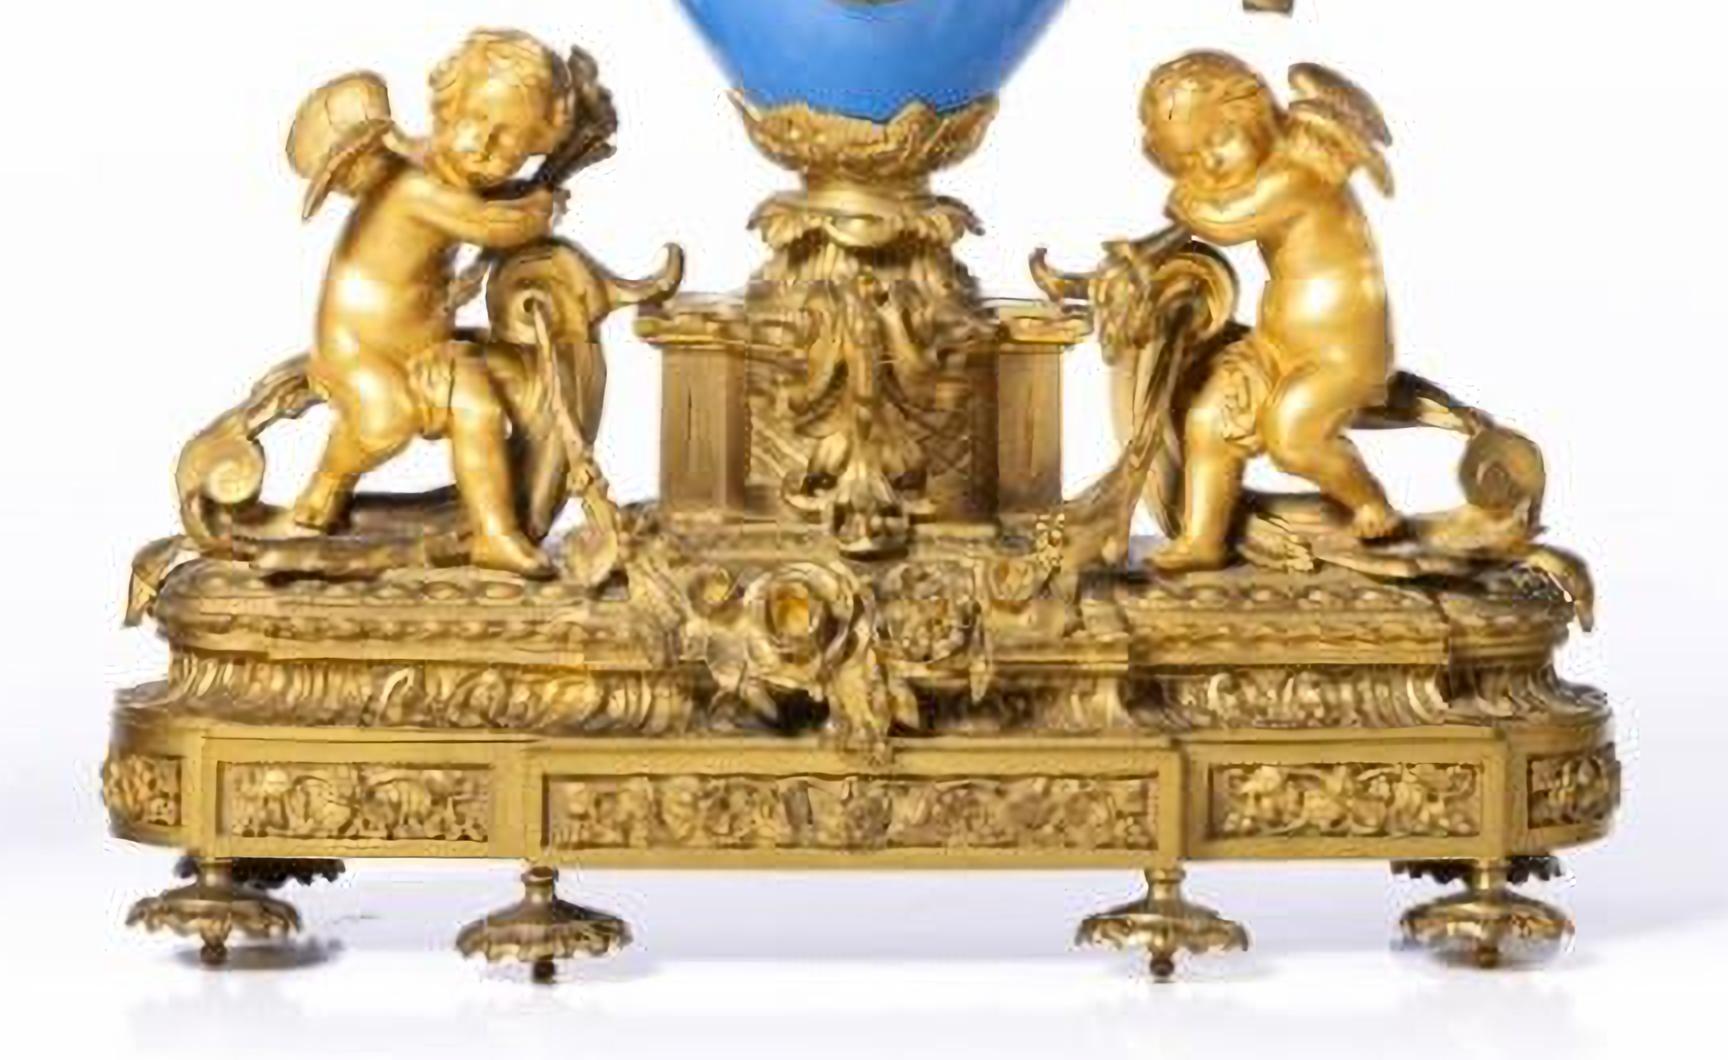 GARNITURE SÉVRES 19ème siècle Napoléon III
Français,
composé d'une horloge et d'une paire de candélabres à sept lumières, en pocella bleu cobalt de style Sévres.
Horloge flanquée d'anges, base avec enroulements et motifs végétaux.
Cadran avec